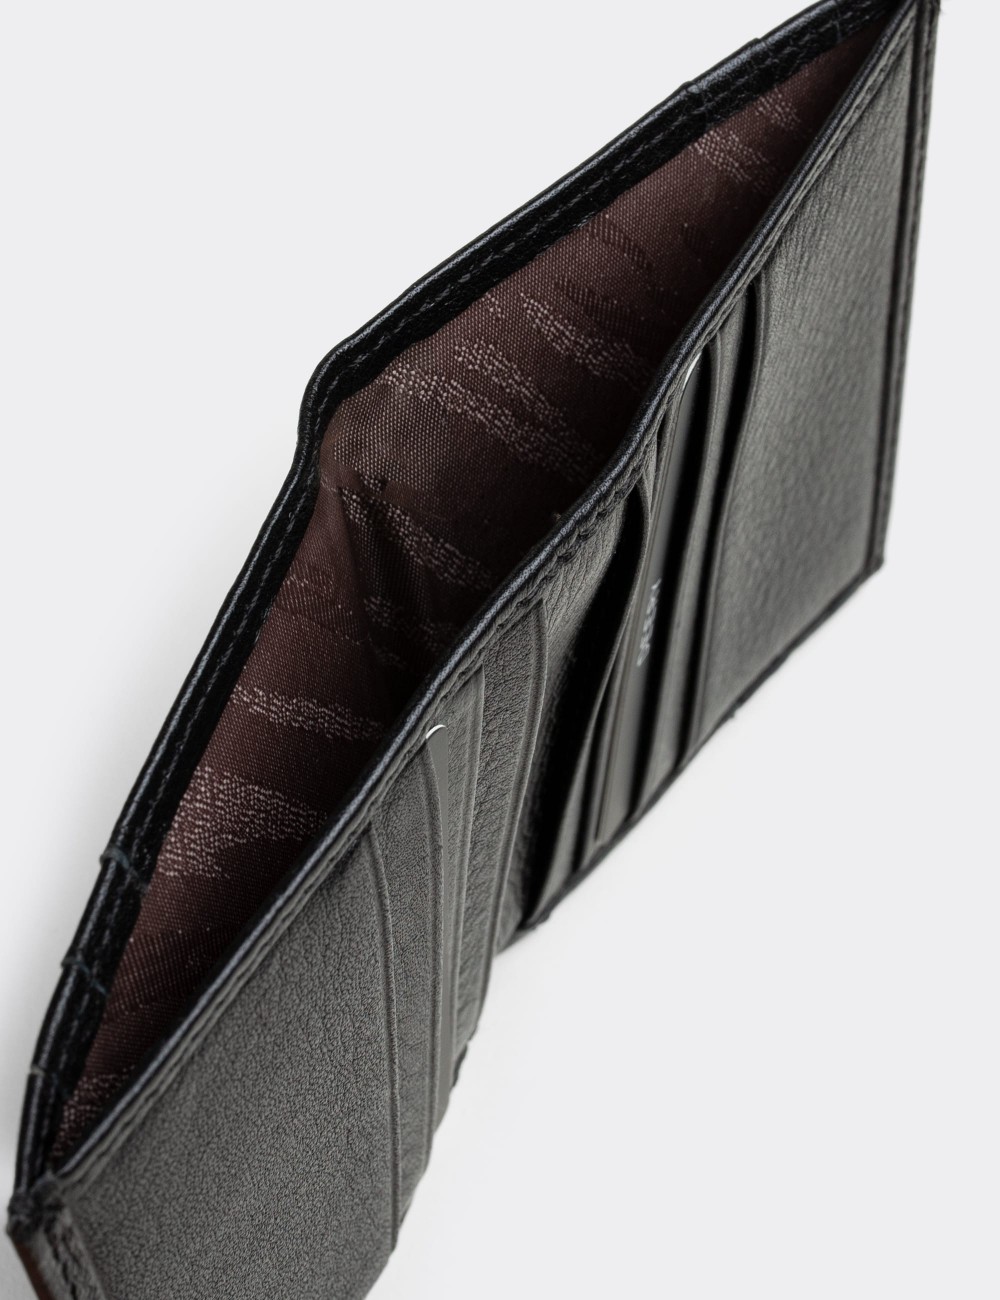  Leather Black Men's Wallet - 00518MSYHZ01